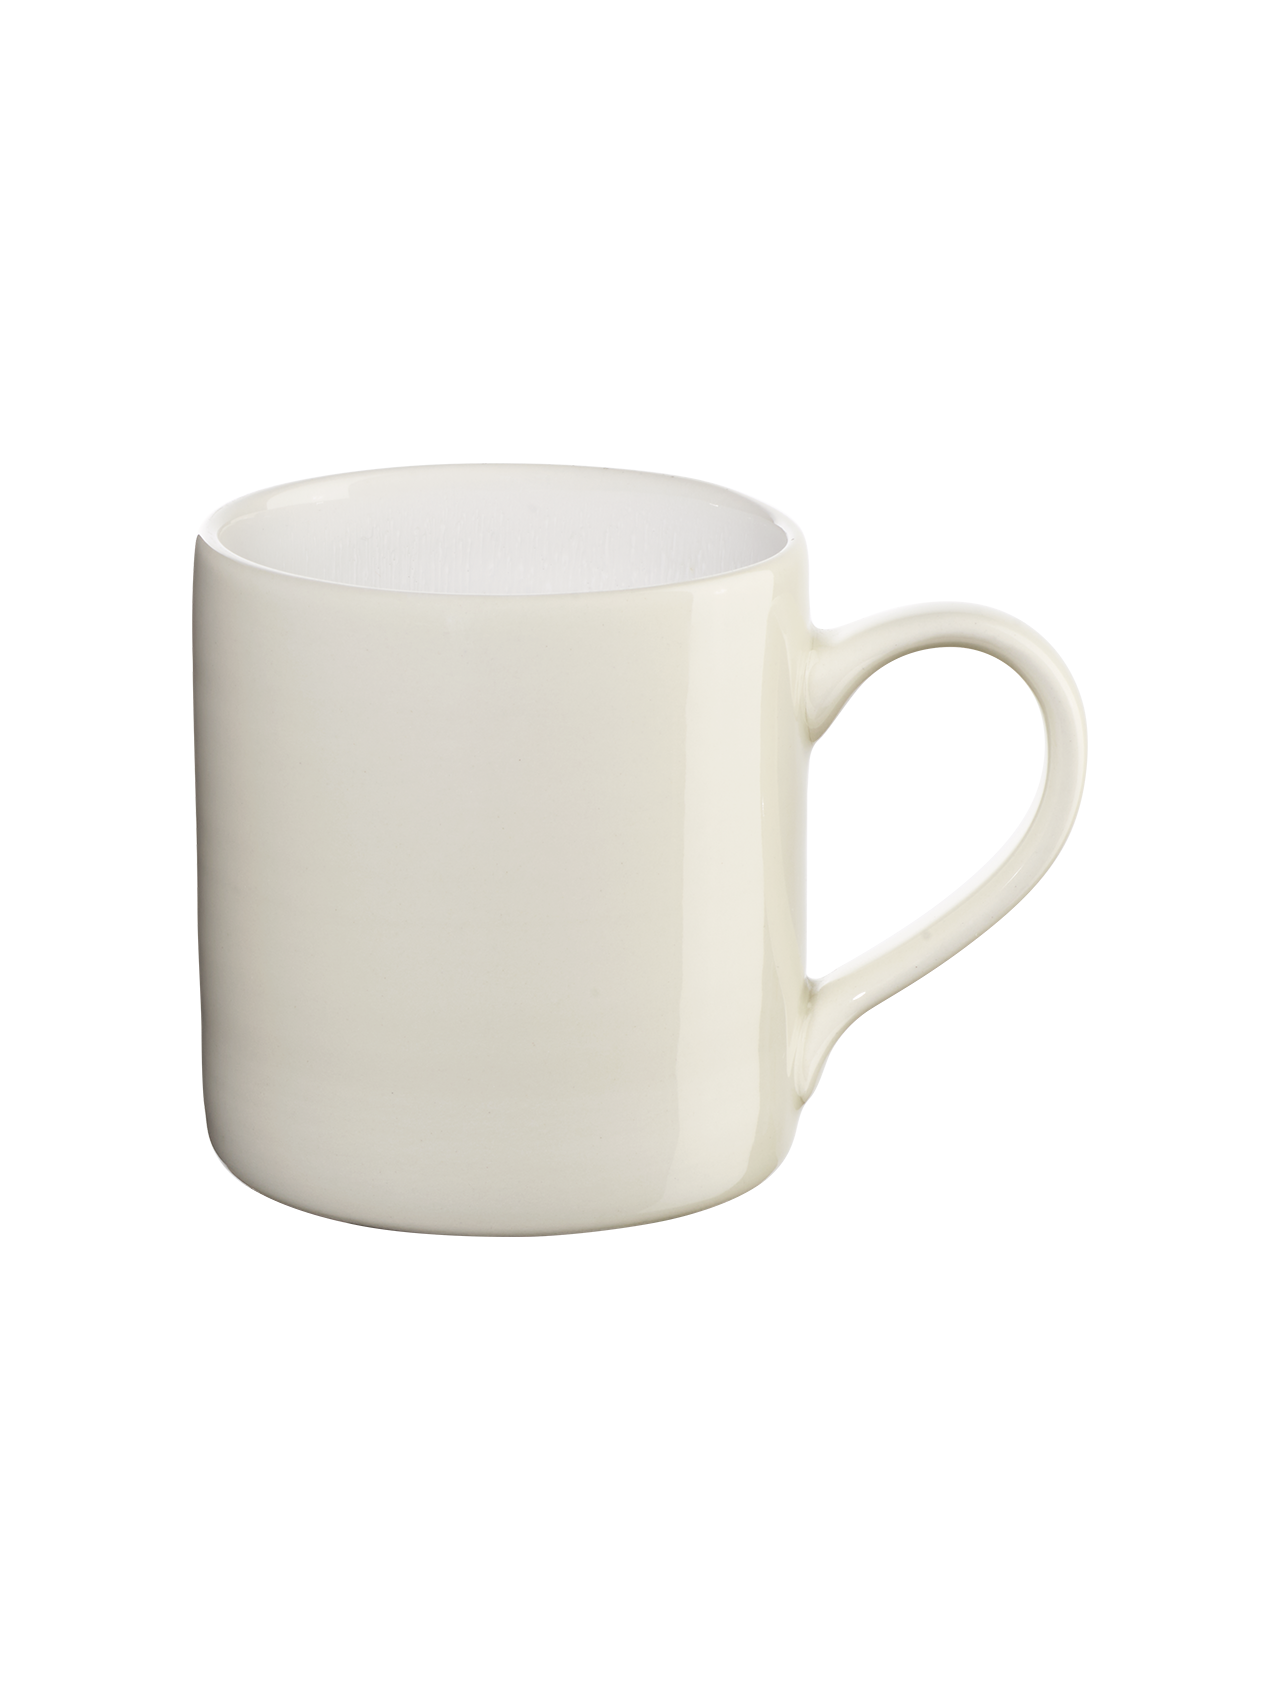 Mug Re:glaze